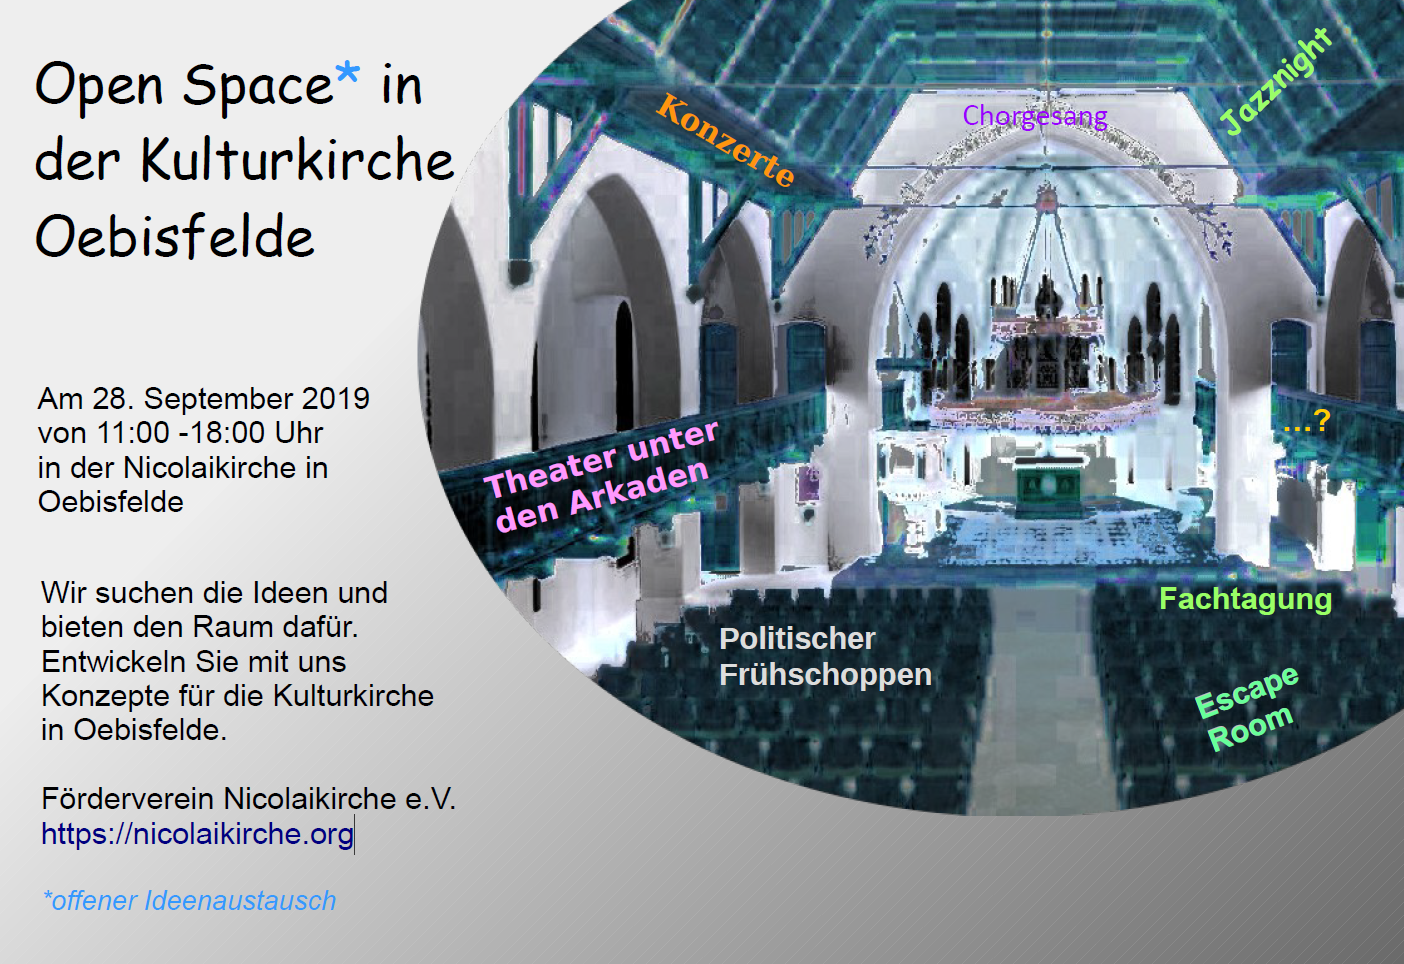 Open Space am 28.9.2019 in der Nicolaikirche